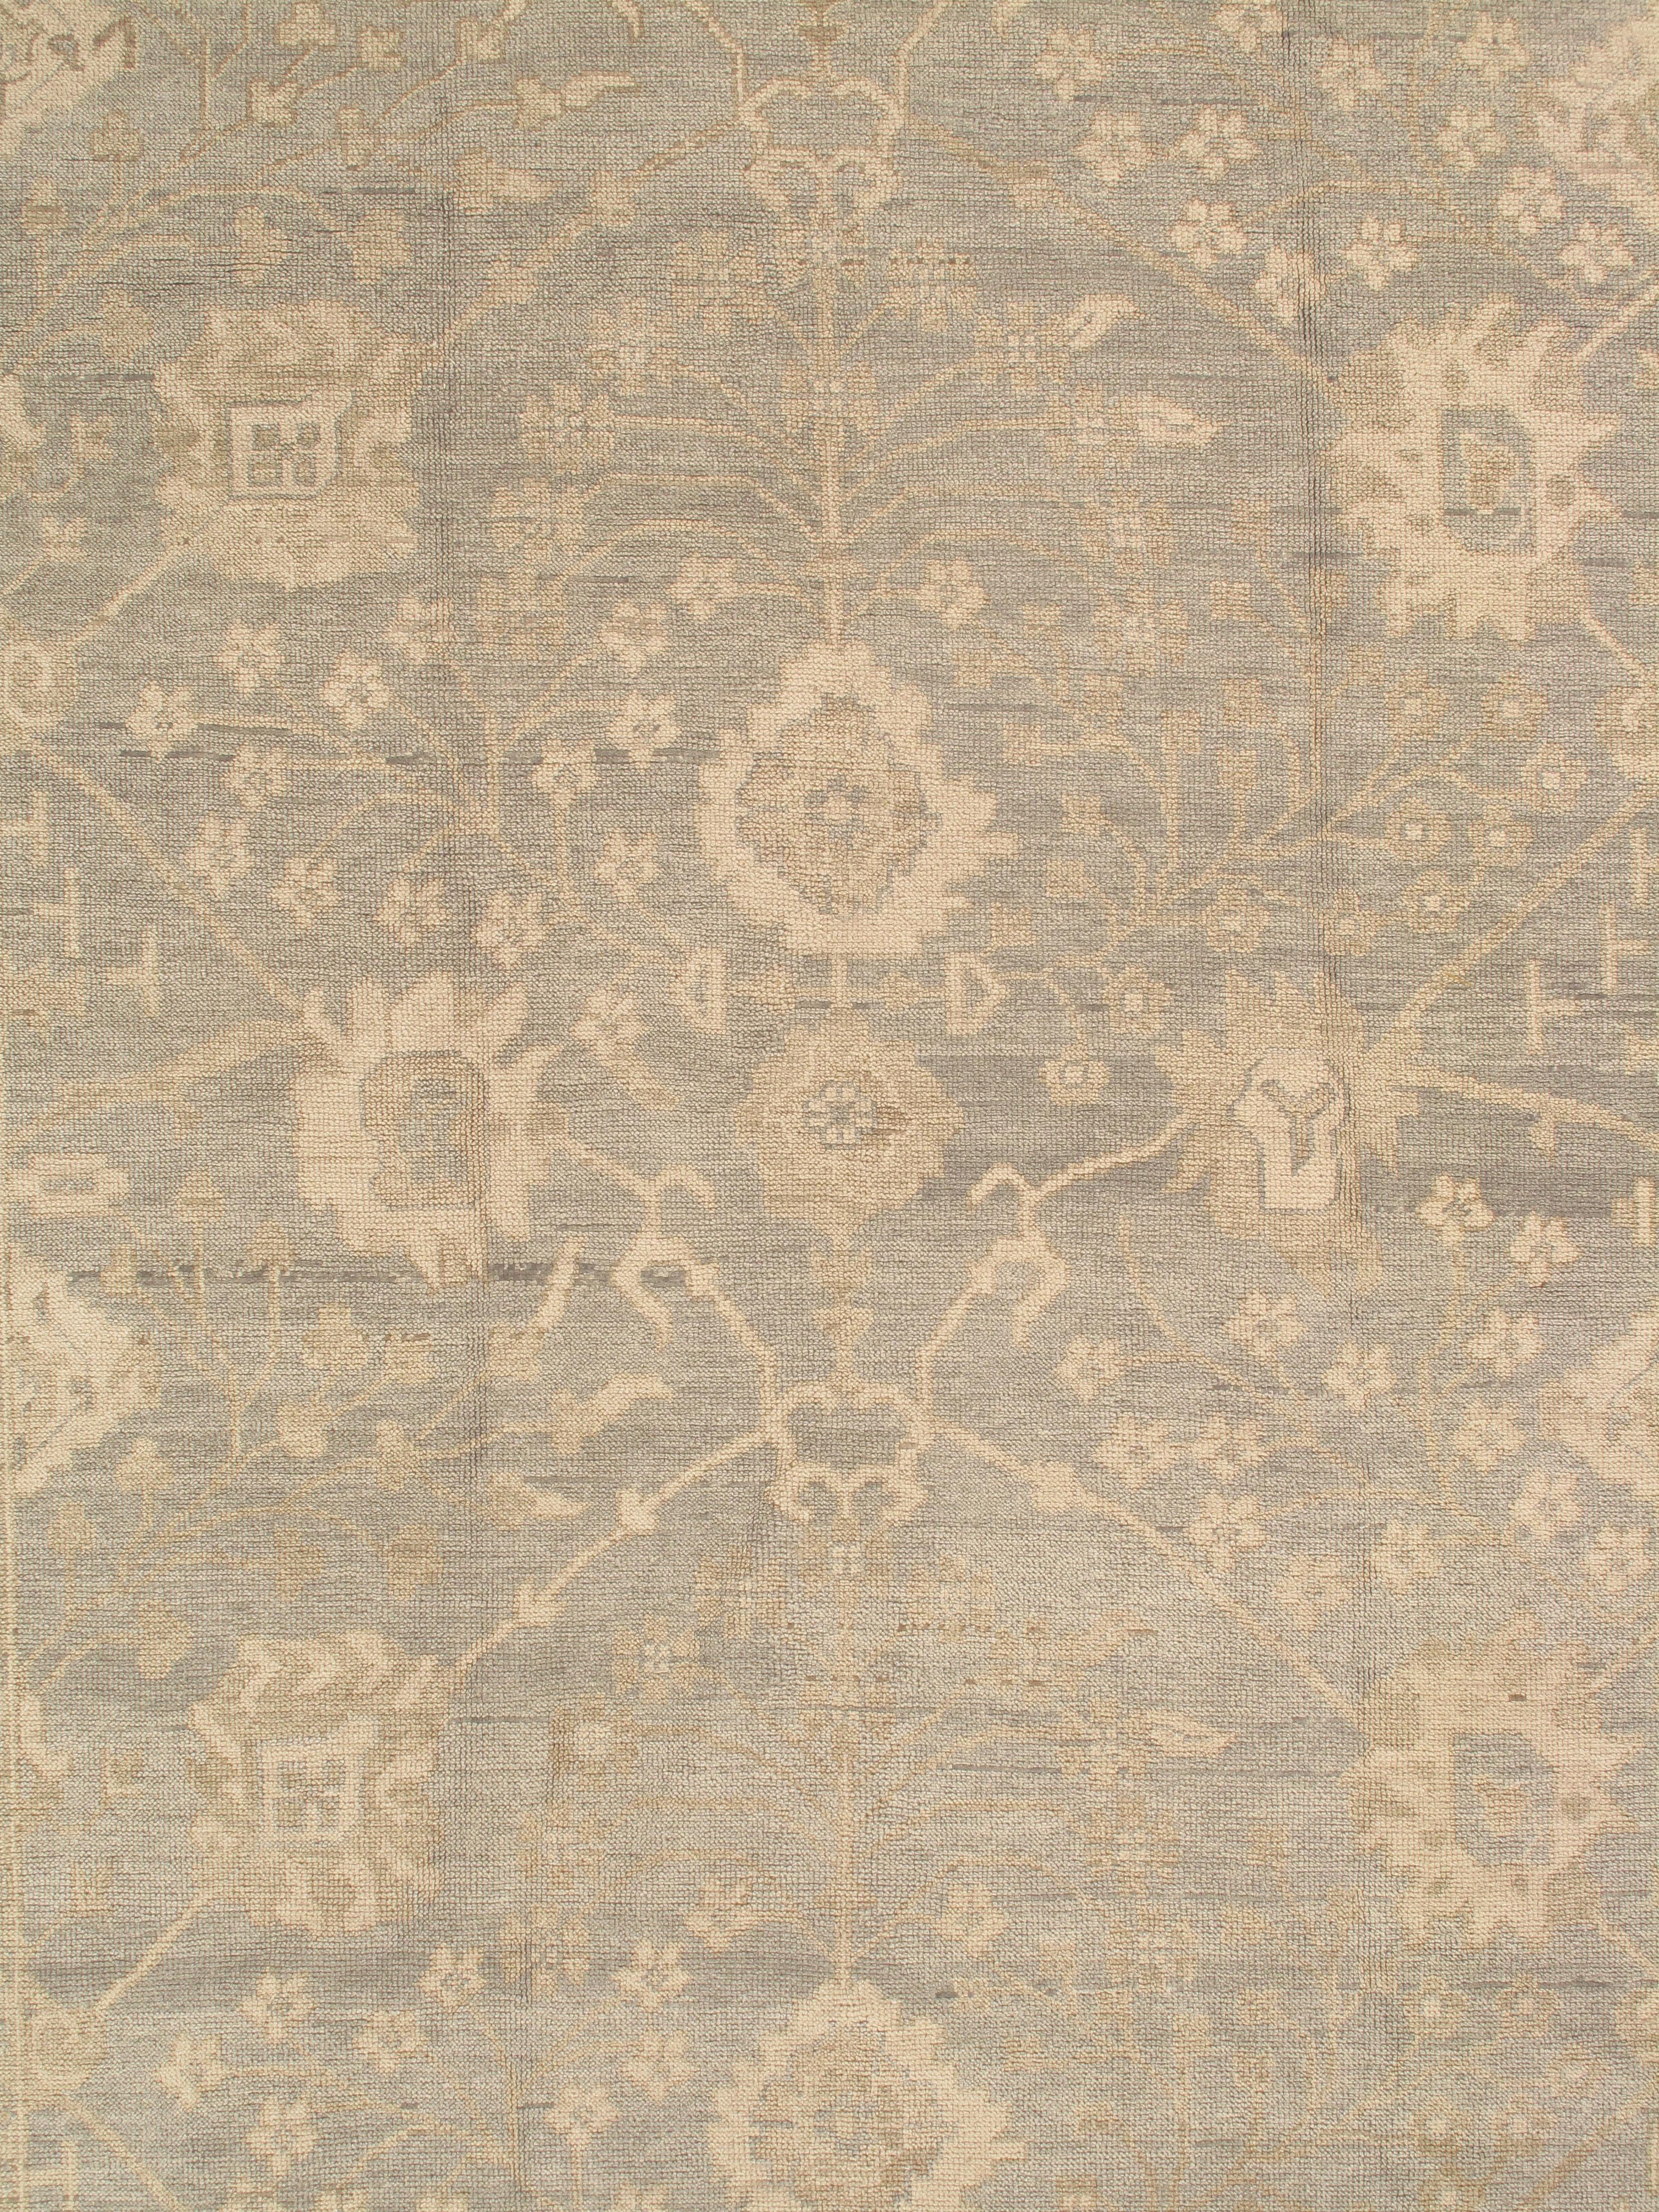 Hand-Knotted Vintage Oushak Carpet, Oriental Rug, Handmade Green Grey, Ivory, Saffron For Sale